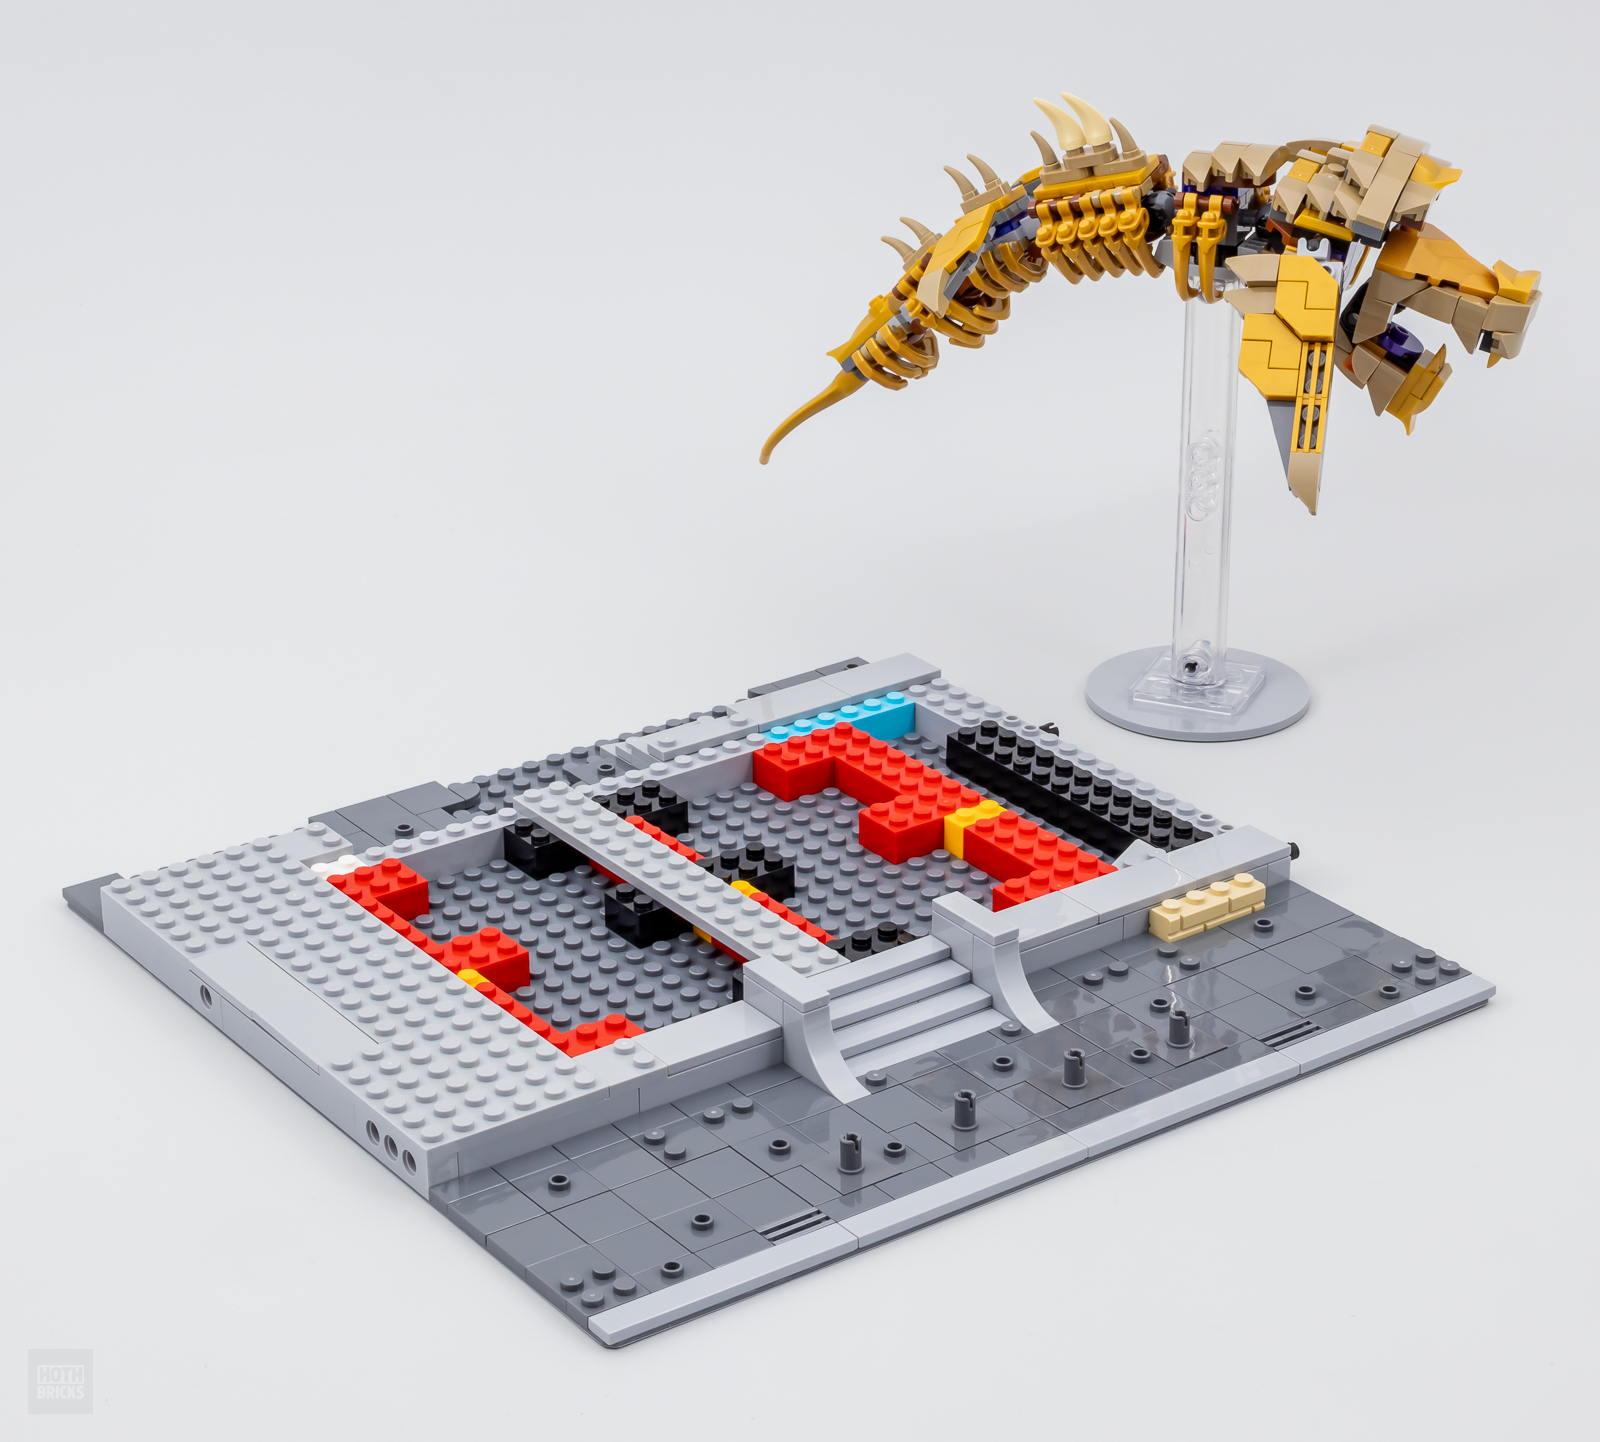 ▻ Nouveautés LEGO Star Wars 2024 : du Midi-Scale, R2-D2 et un diorama pour  fêter les 25 ans de la gamme - HOTH BRICKS